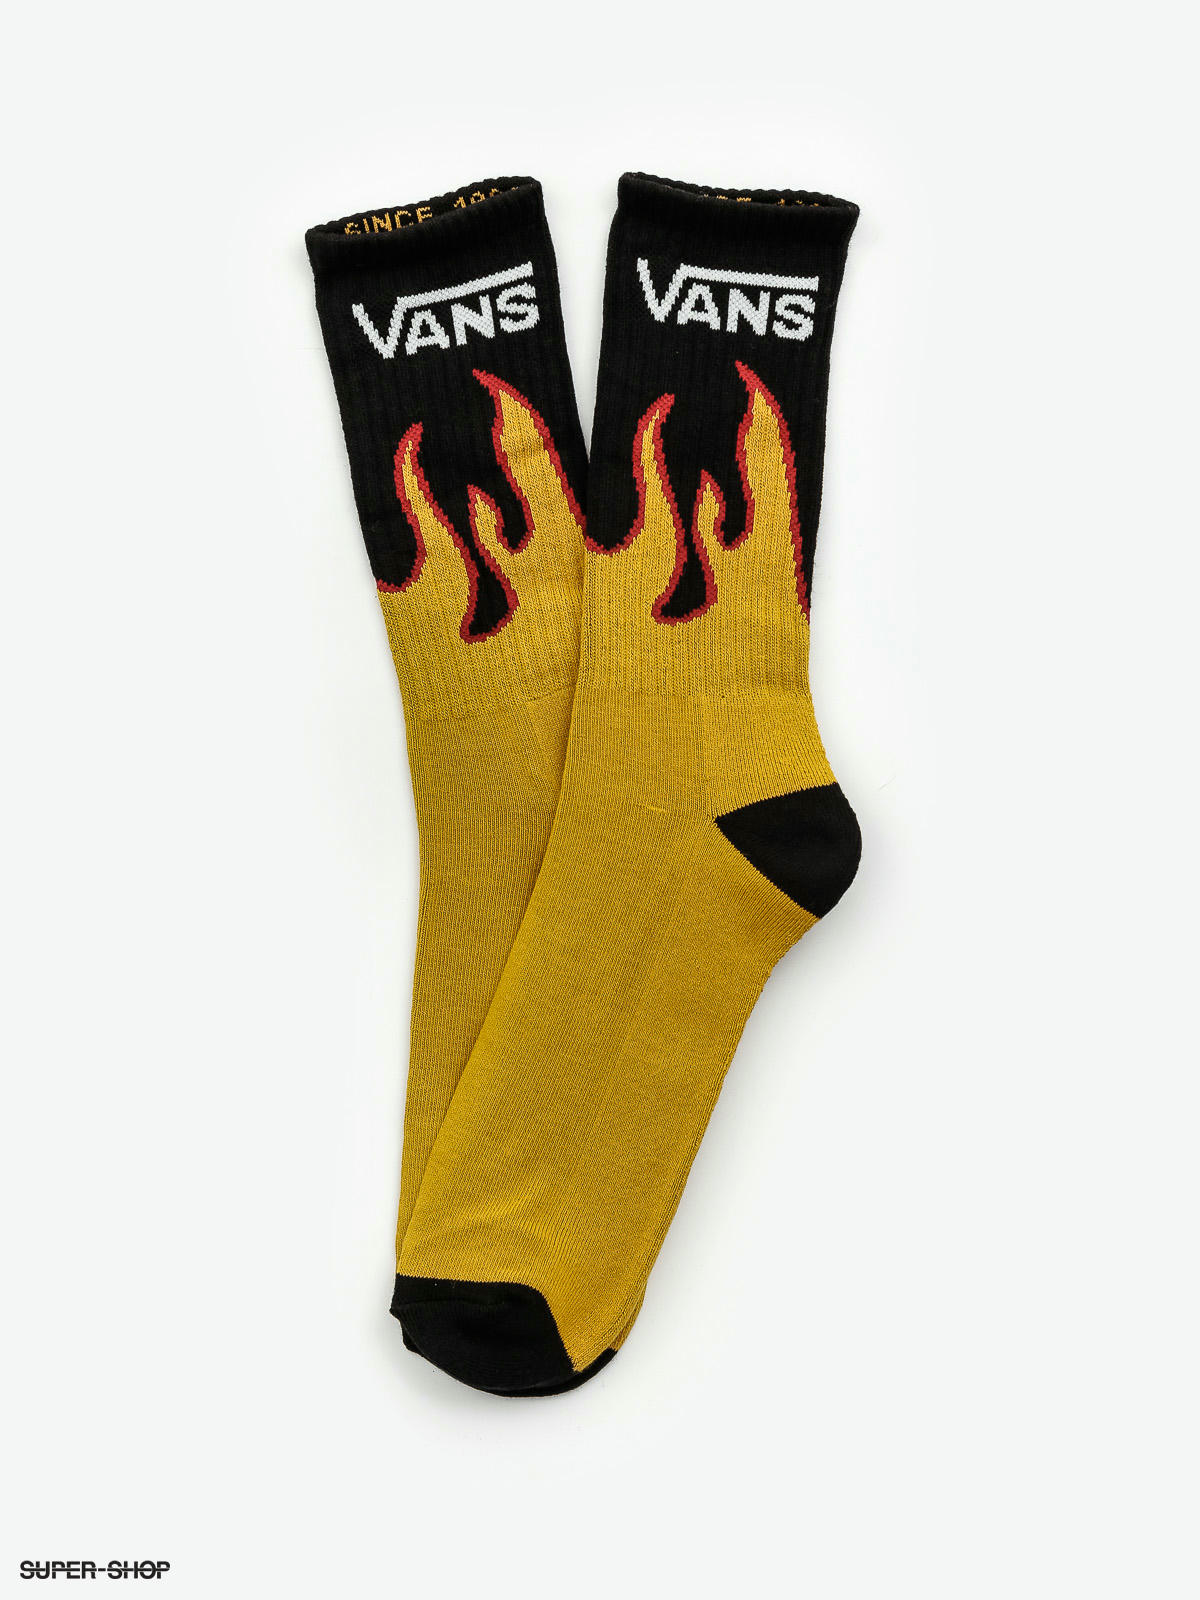 vans socks flame